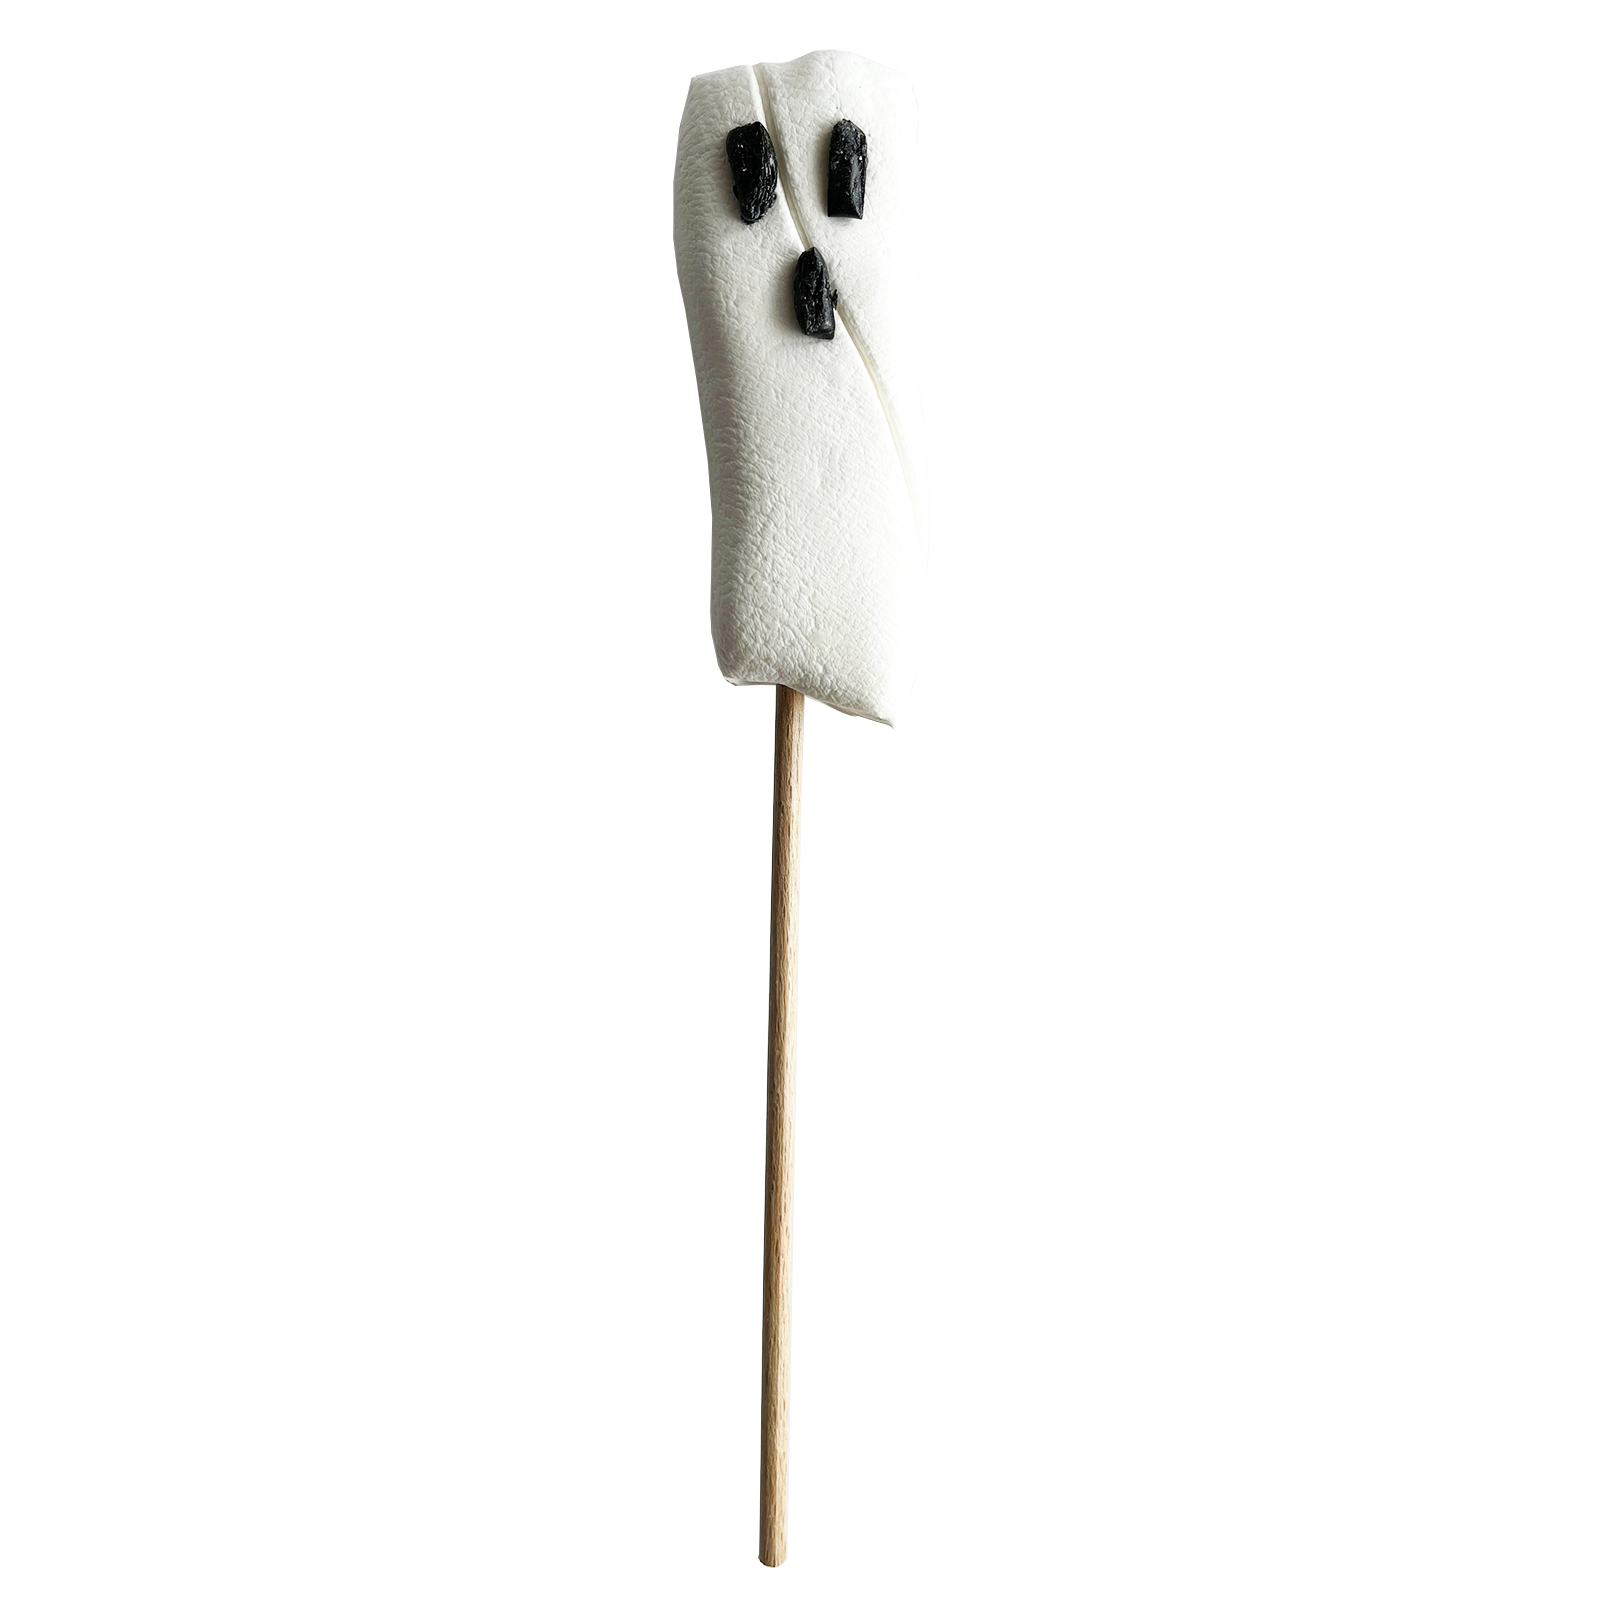 Ghost Lollipop